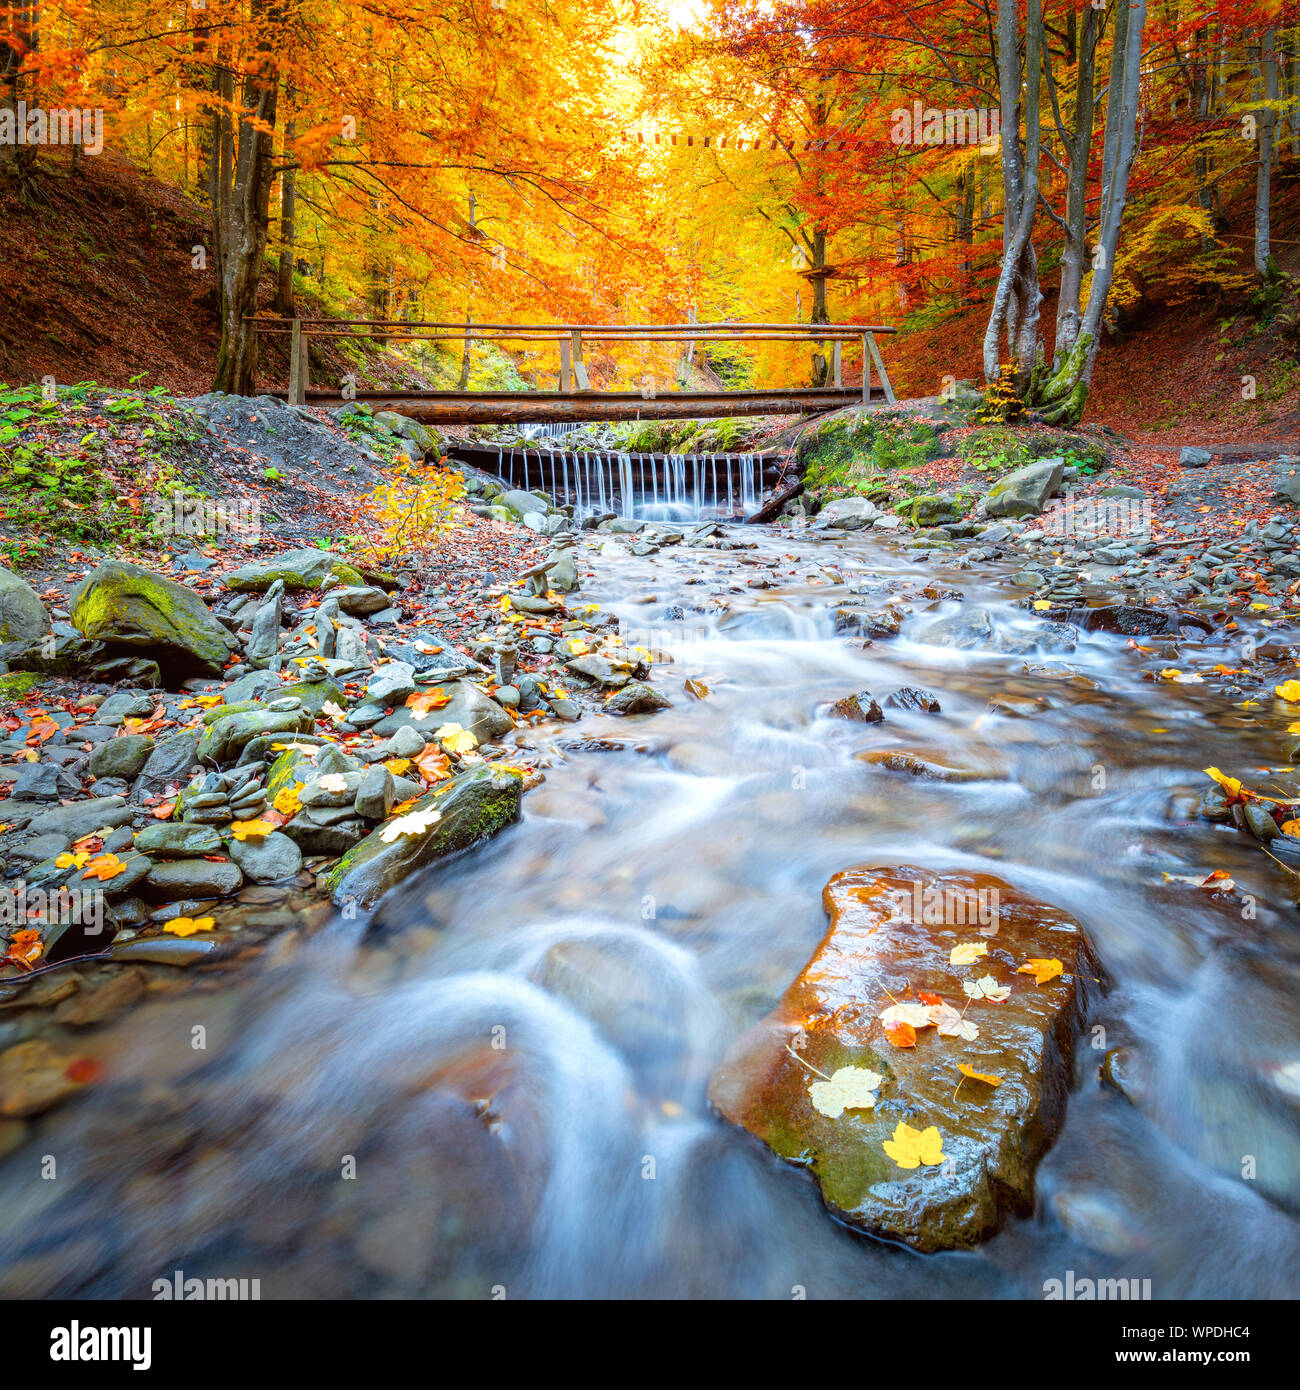 En automne étonnant - forêt arbres colorés, petit pont de bois et de pierres de la rivière rapide, paysage d'automne Banque D'Images